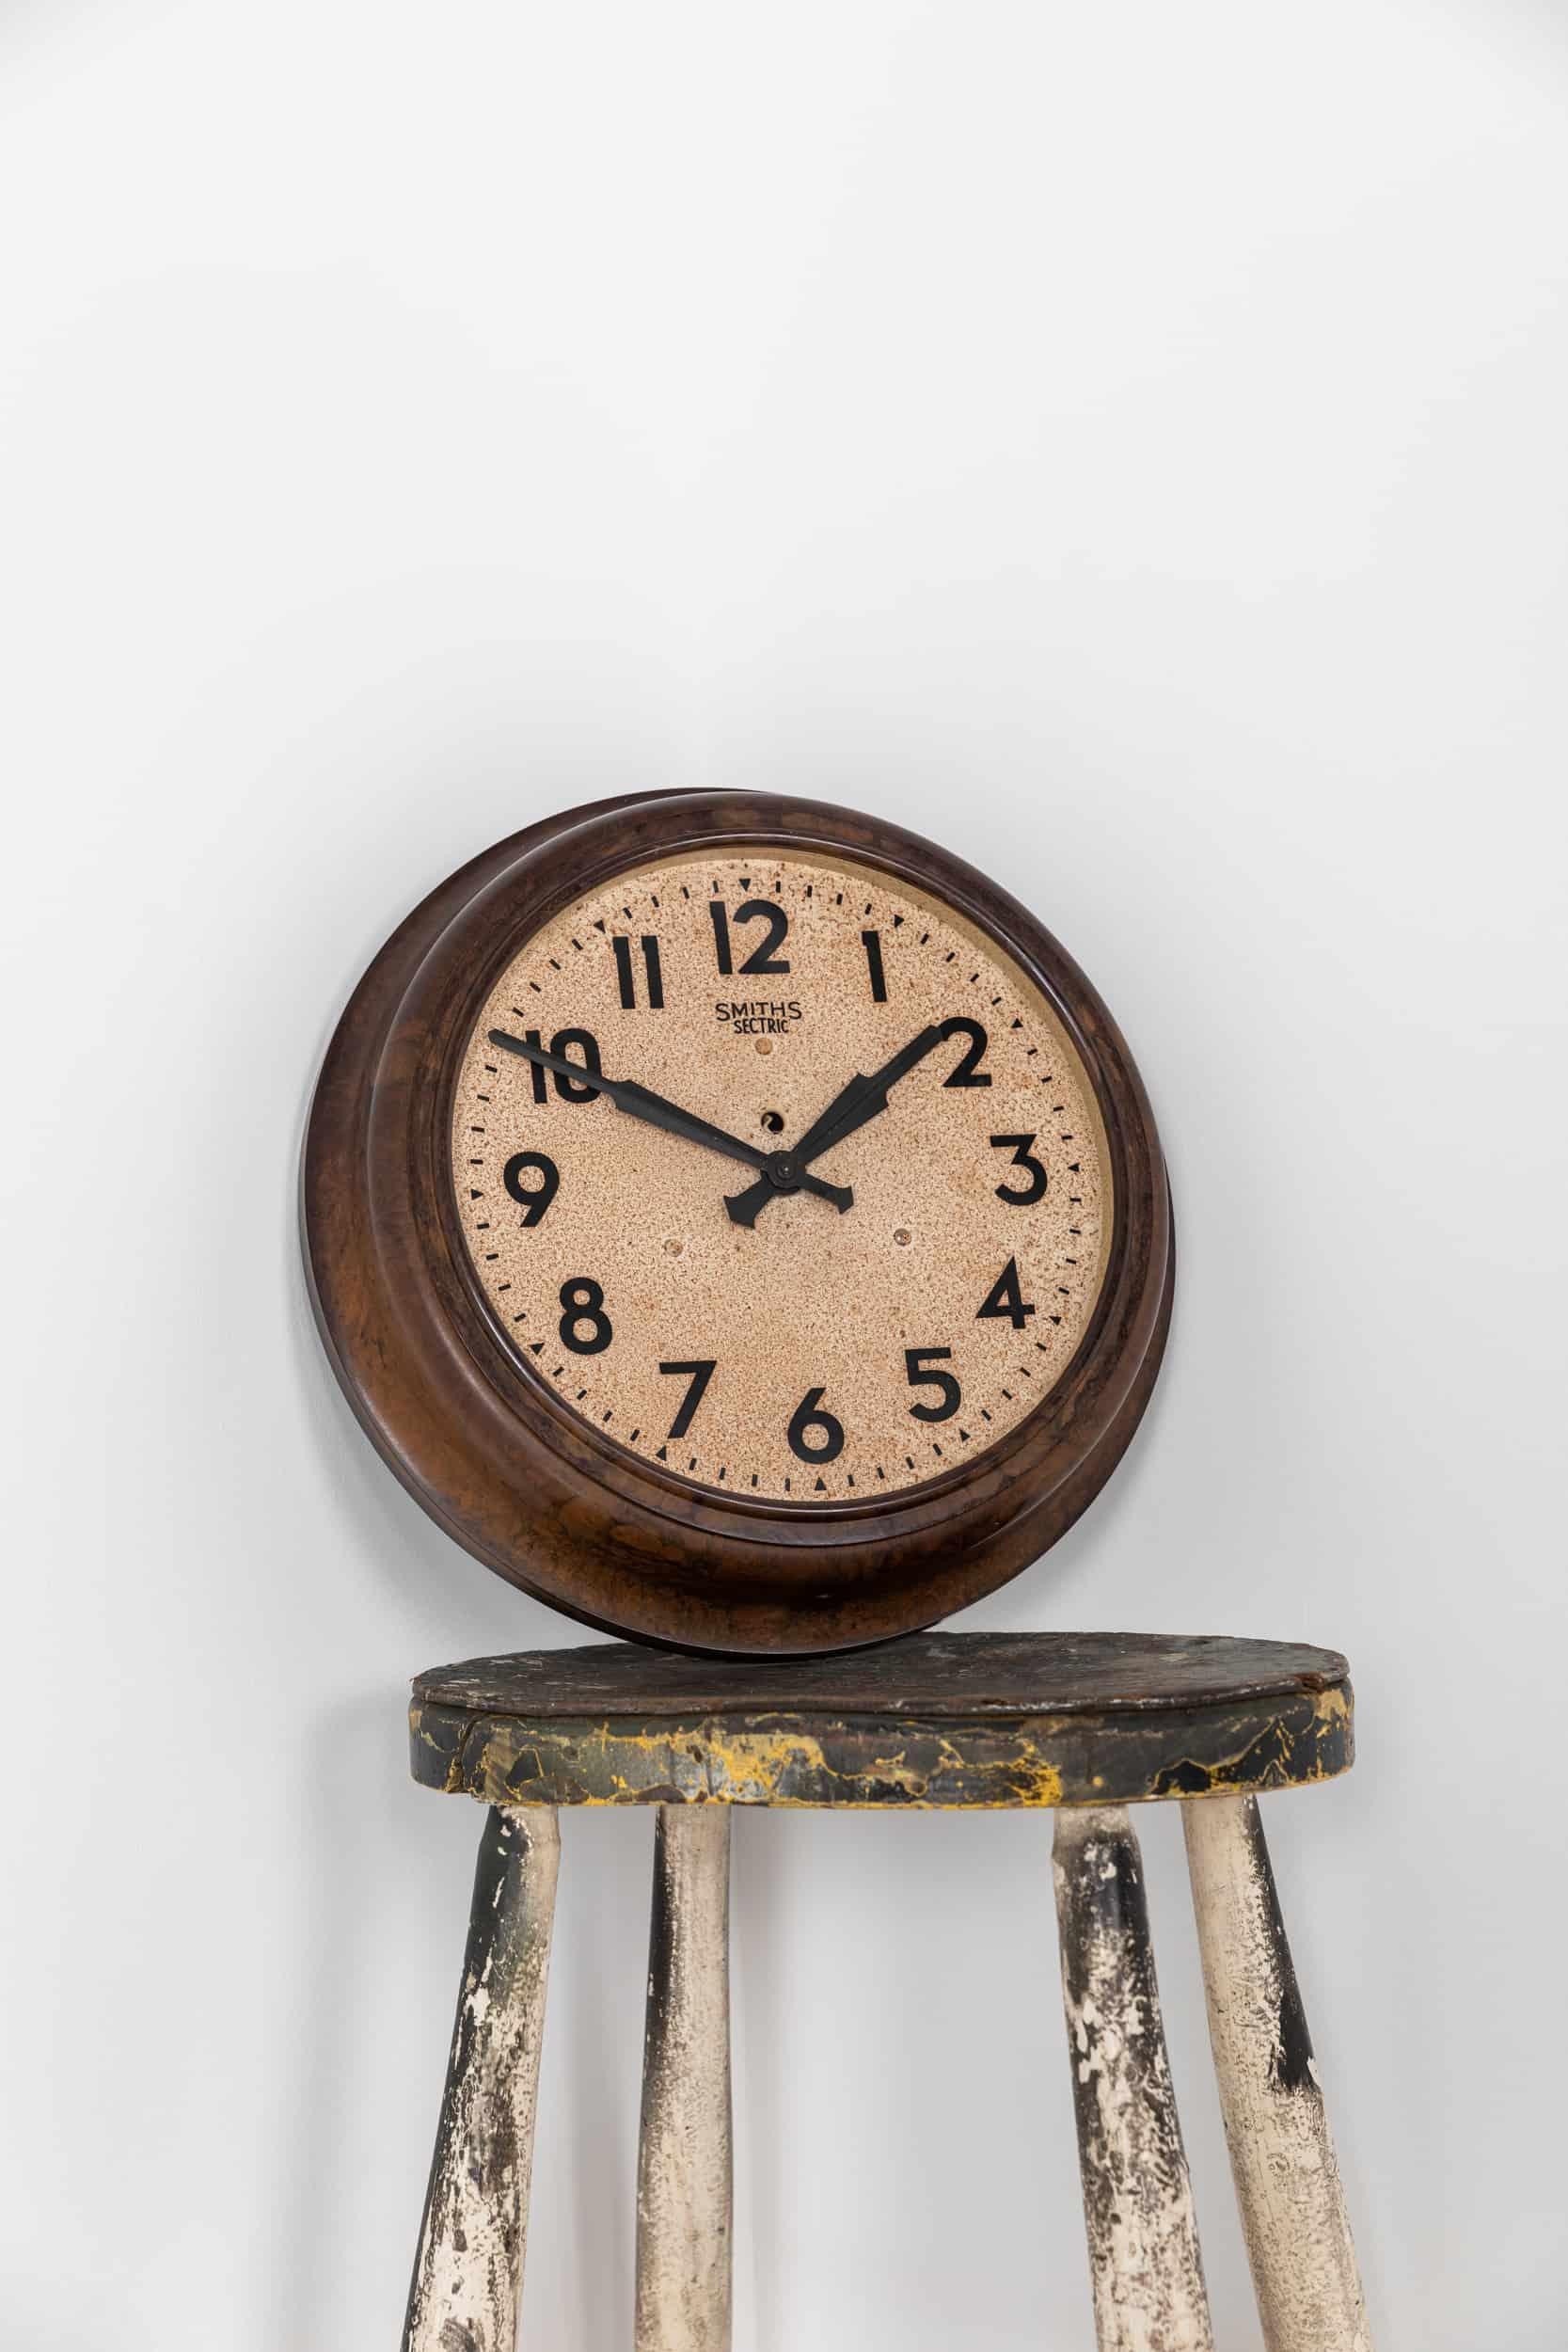 Hervorragendes Beispiel für eine industrielle Wanduhr von Smiths English Clock Systems. um 1940

Eine völlig originale Smiths-Uhr mit einem verwitterten Zifferblatt in einer schönen marmorierten Bakelit-Einfassung. Smith Sectric Branding ins